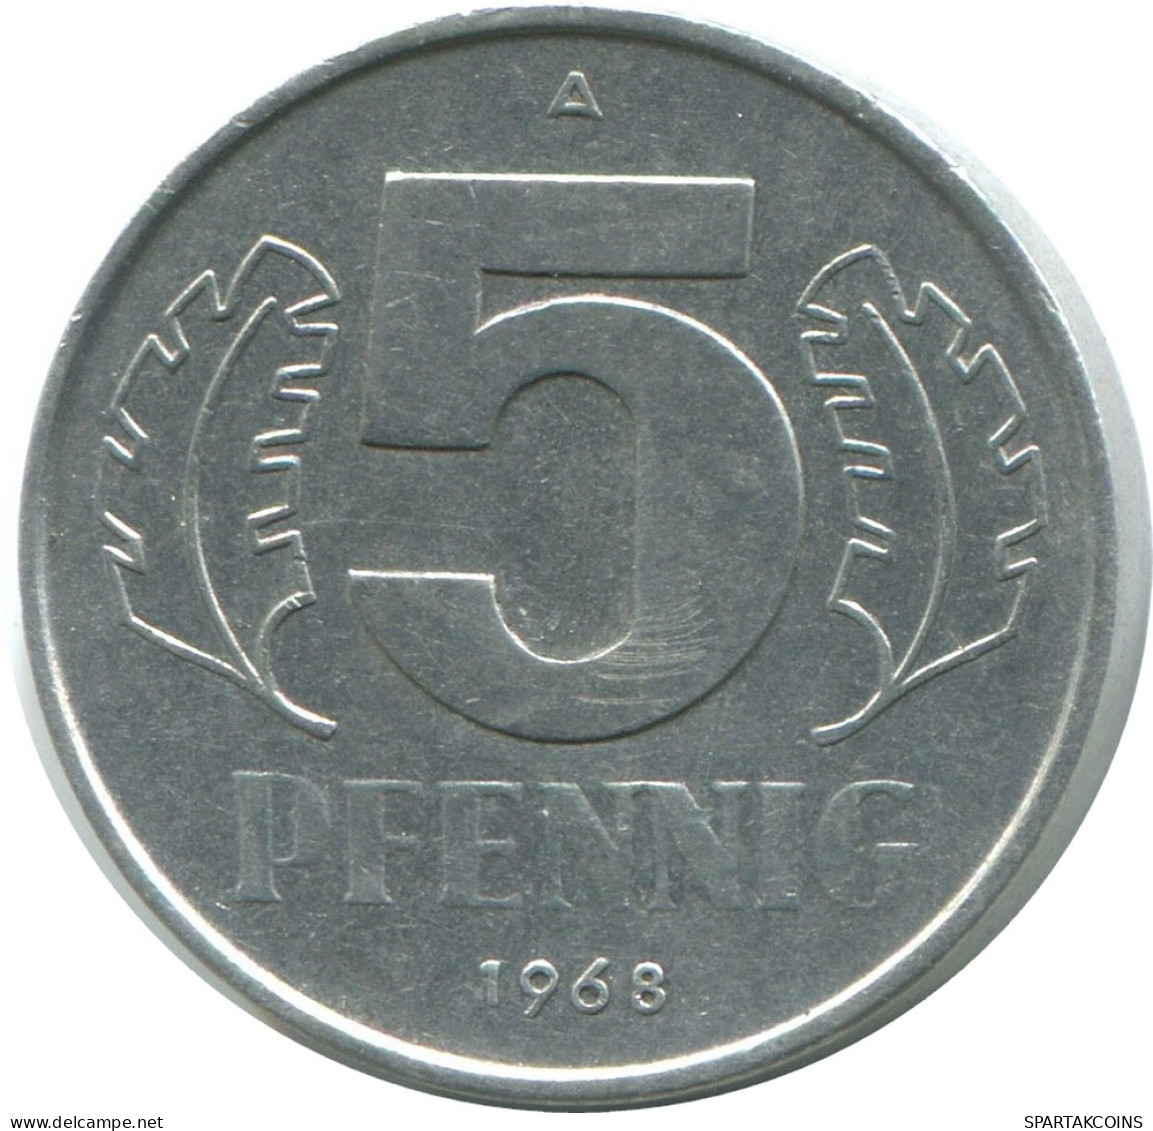 5 PFENNIG 1968 A DDR EAST GERMANY Coin #AE011.U - 5 Pfennig